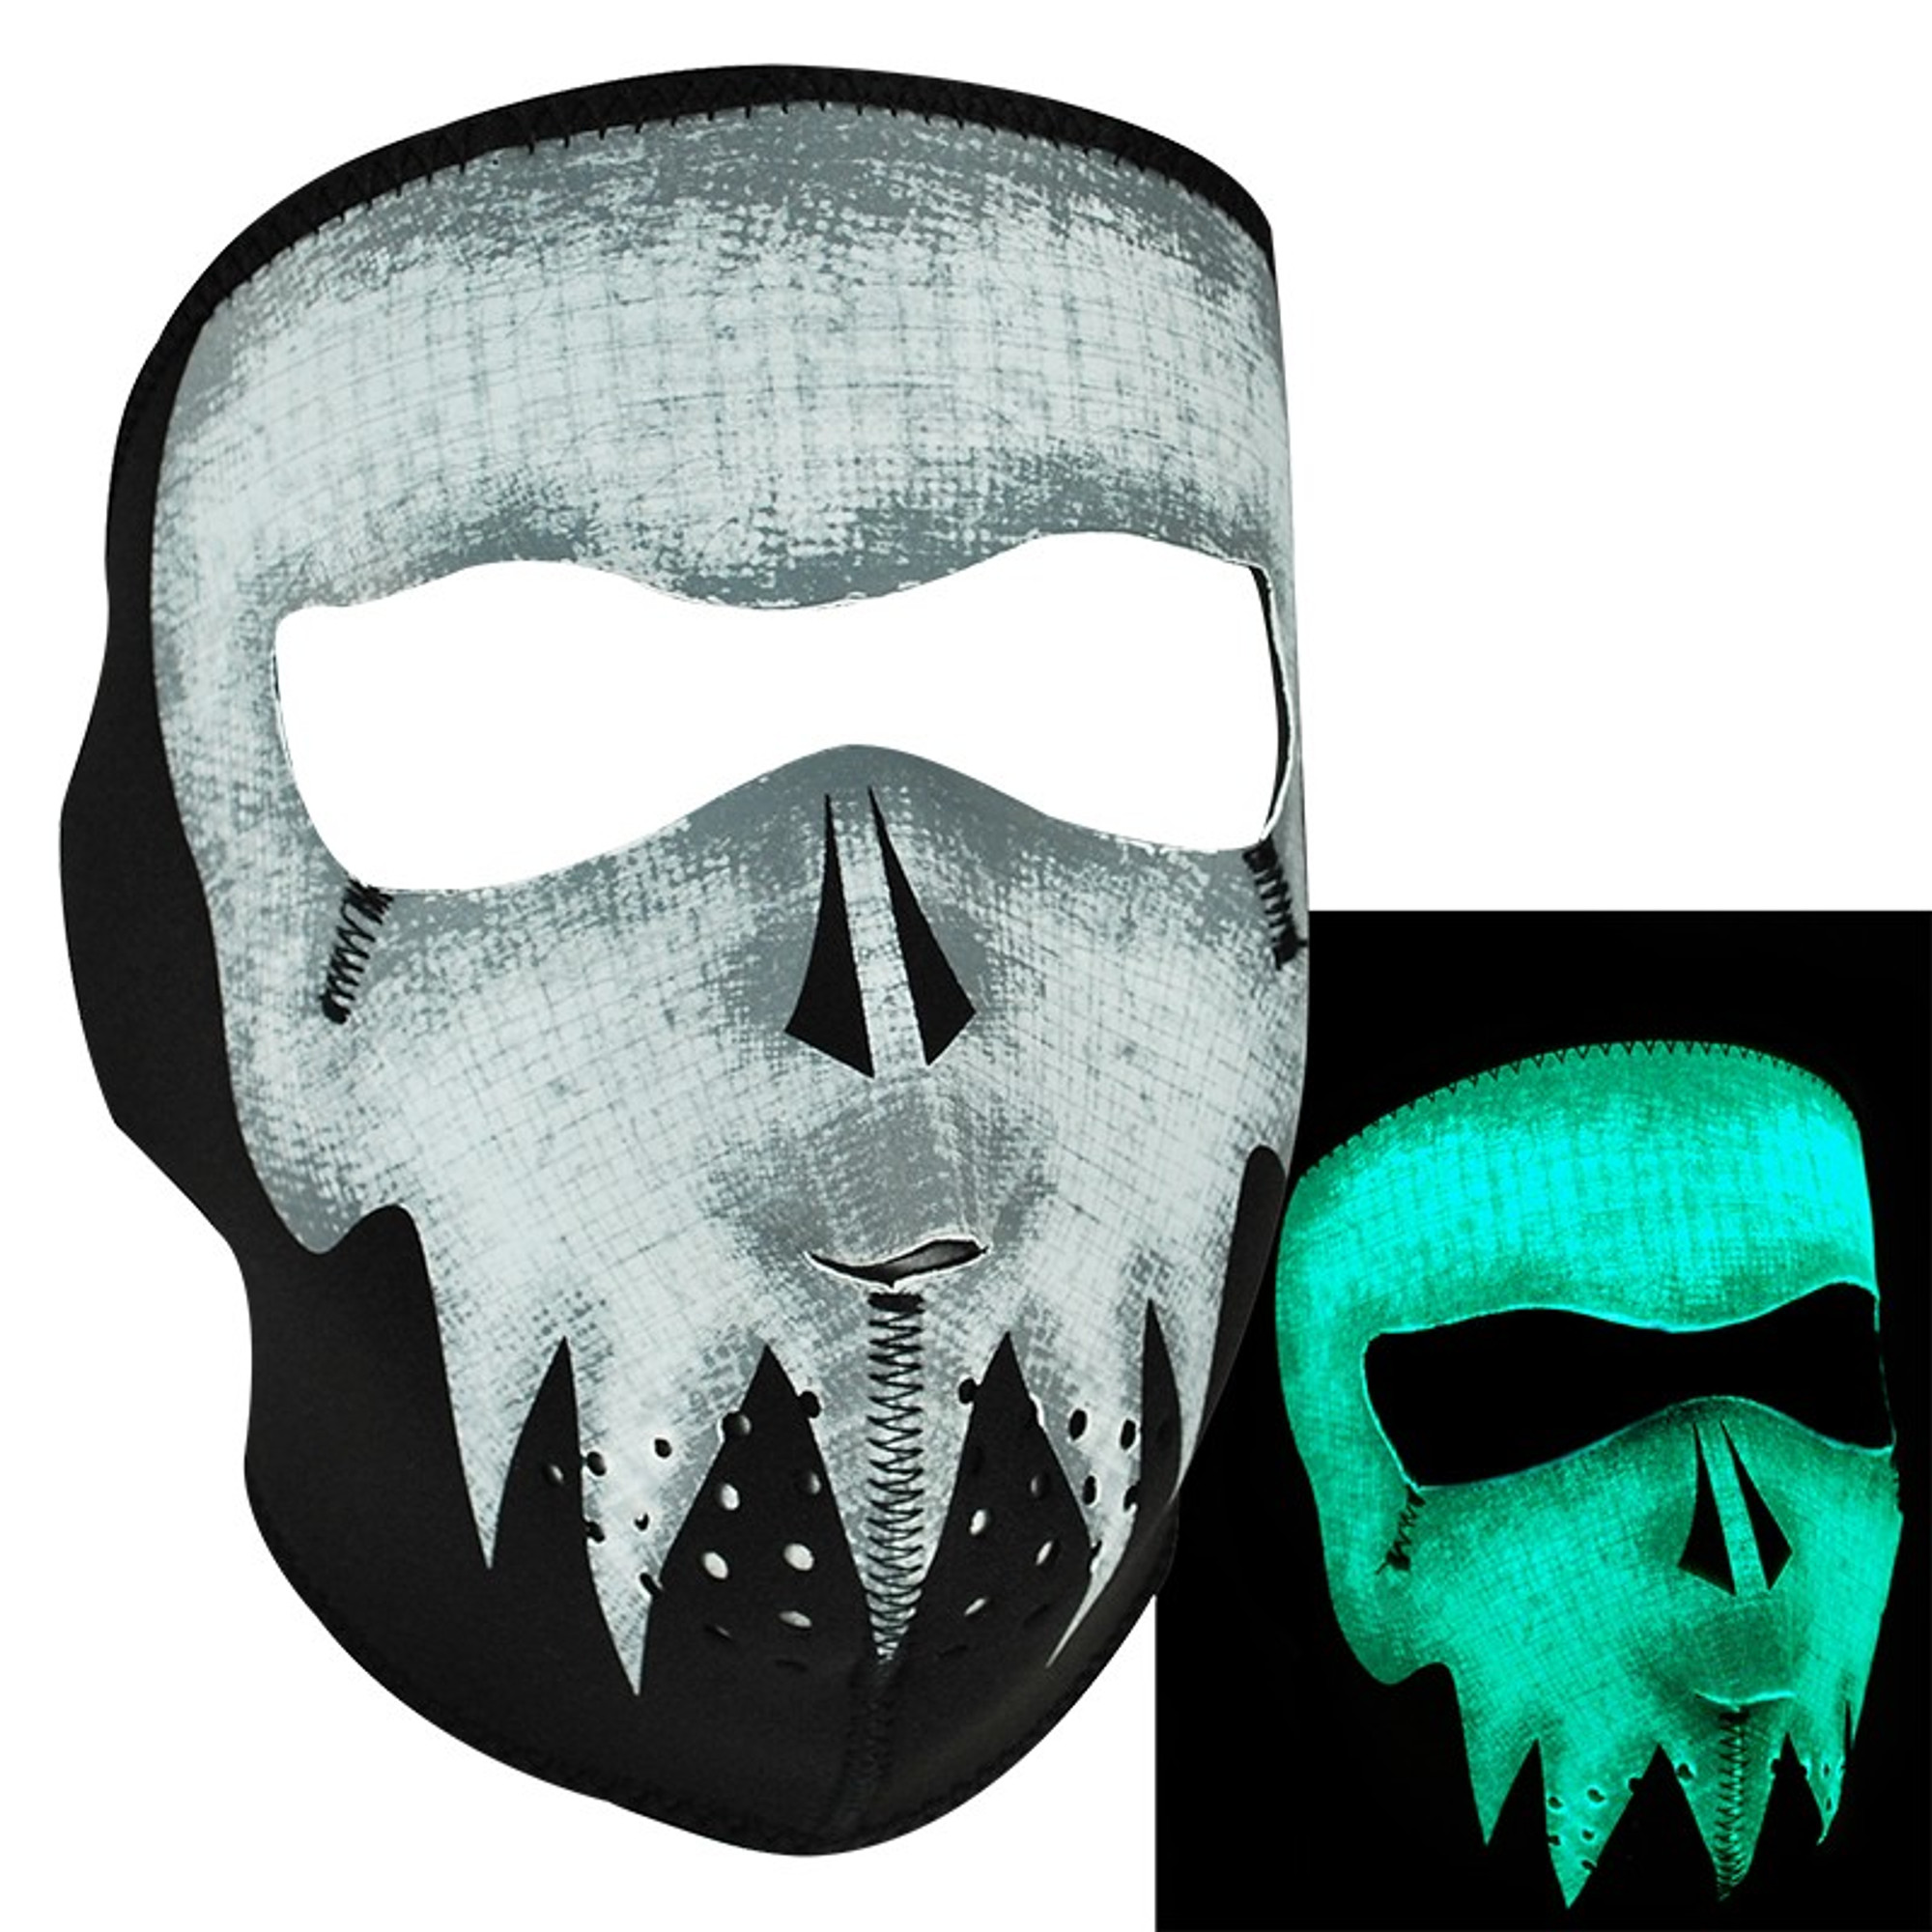 Zan Neoprene Glow-in-the-Dark Full Face Mask - Gray Skull